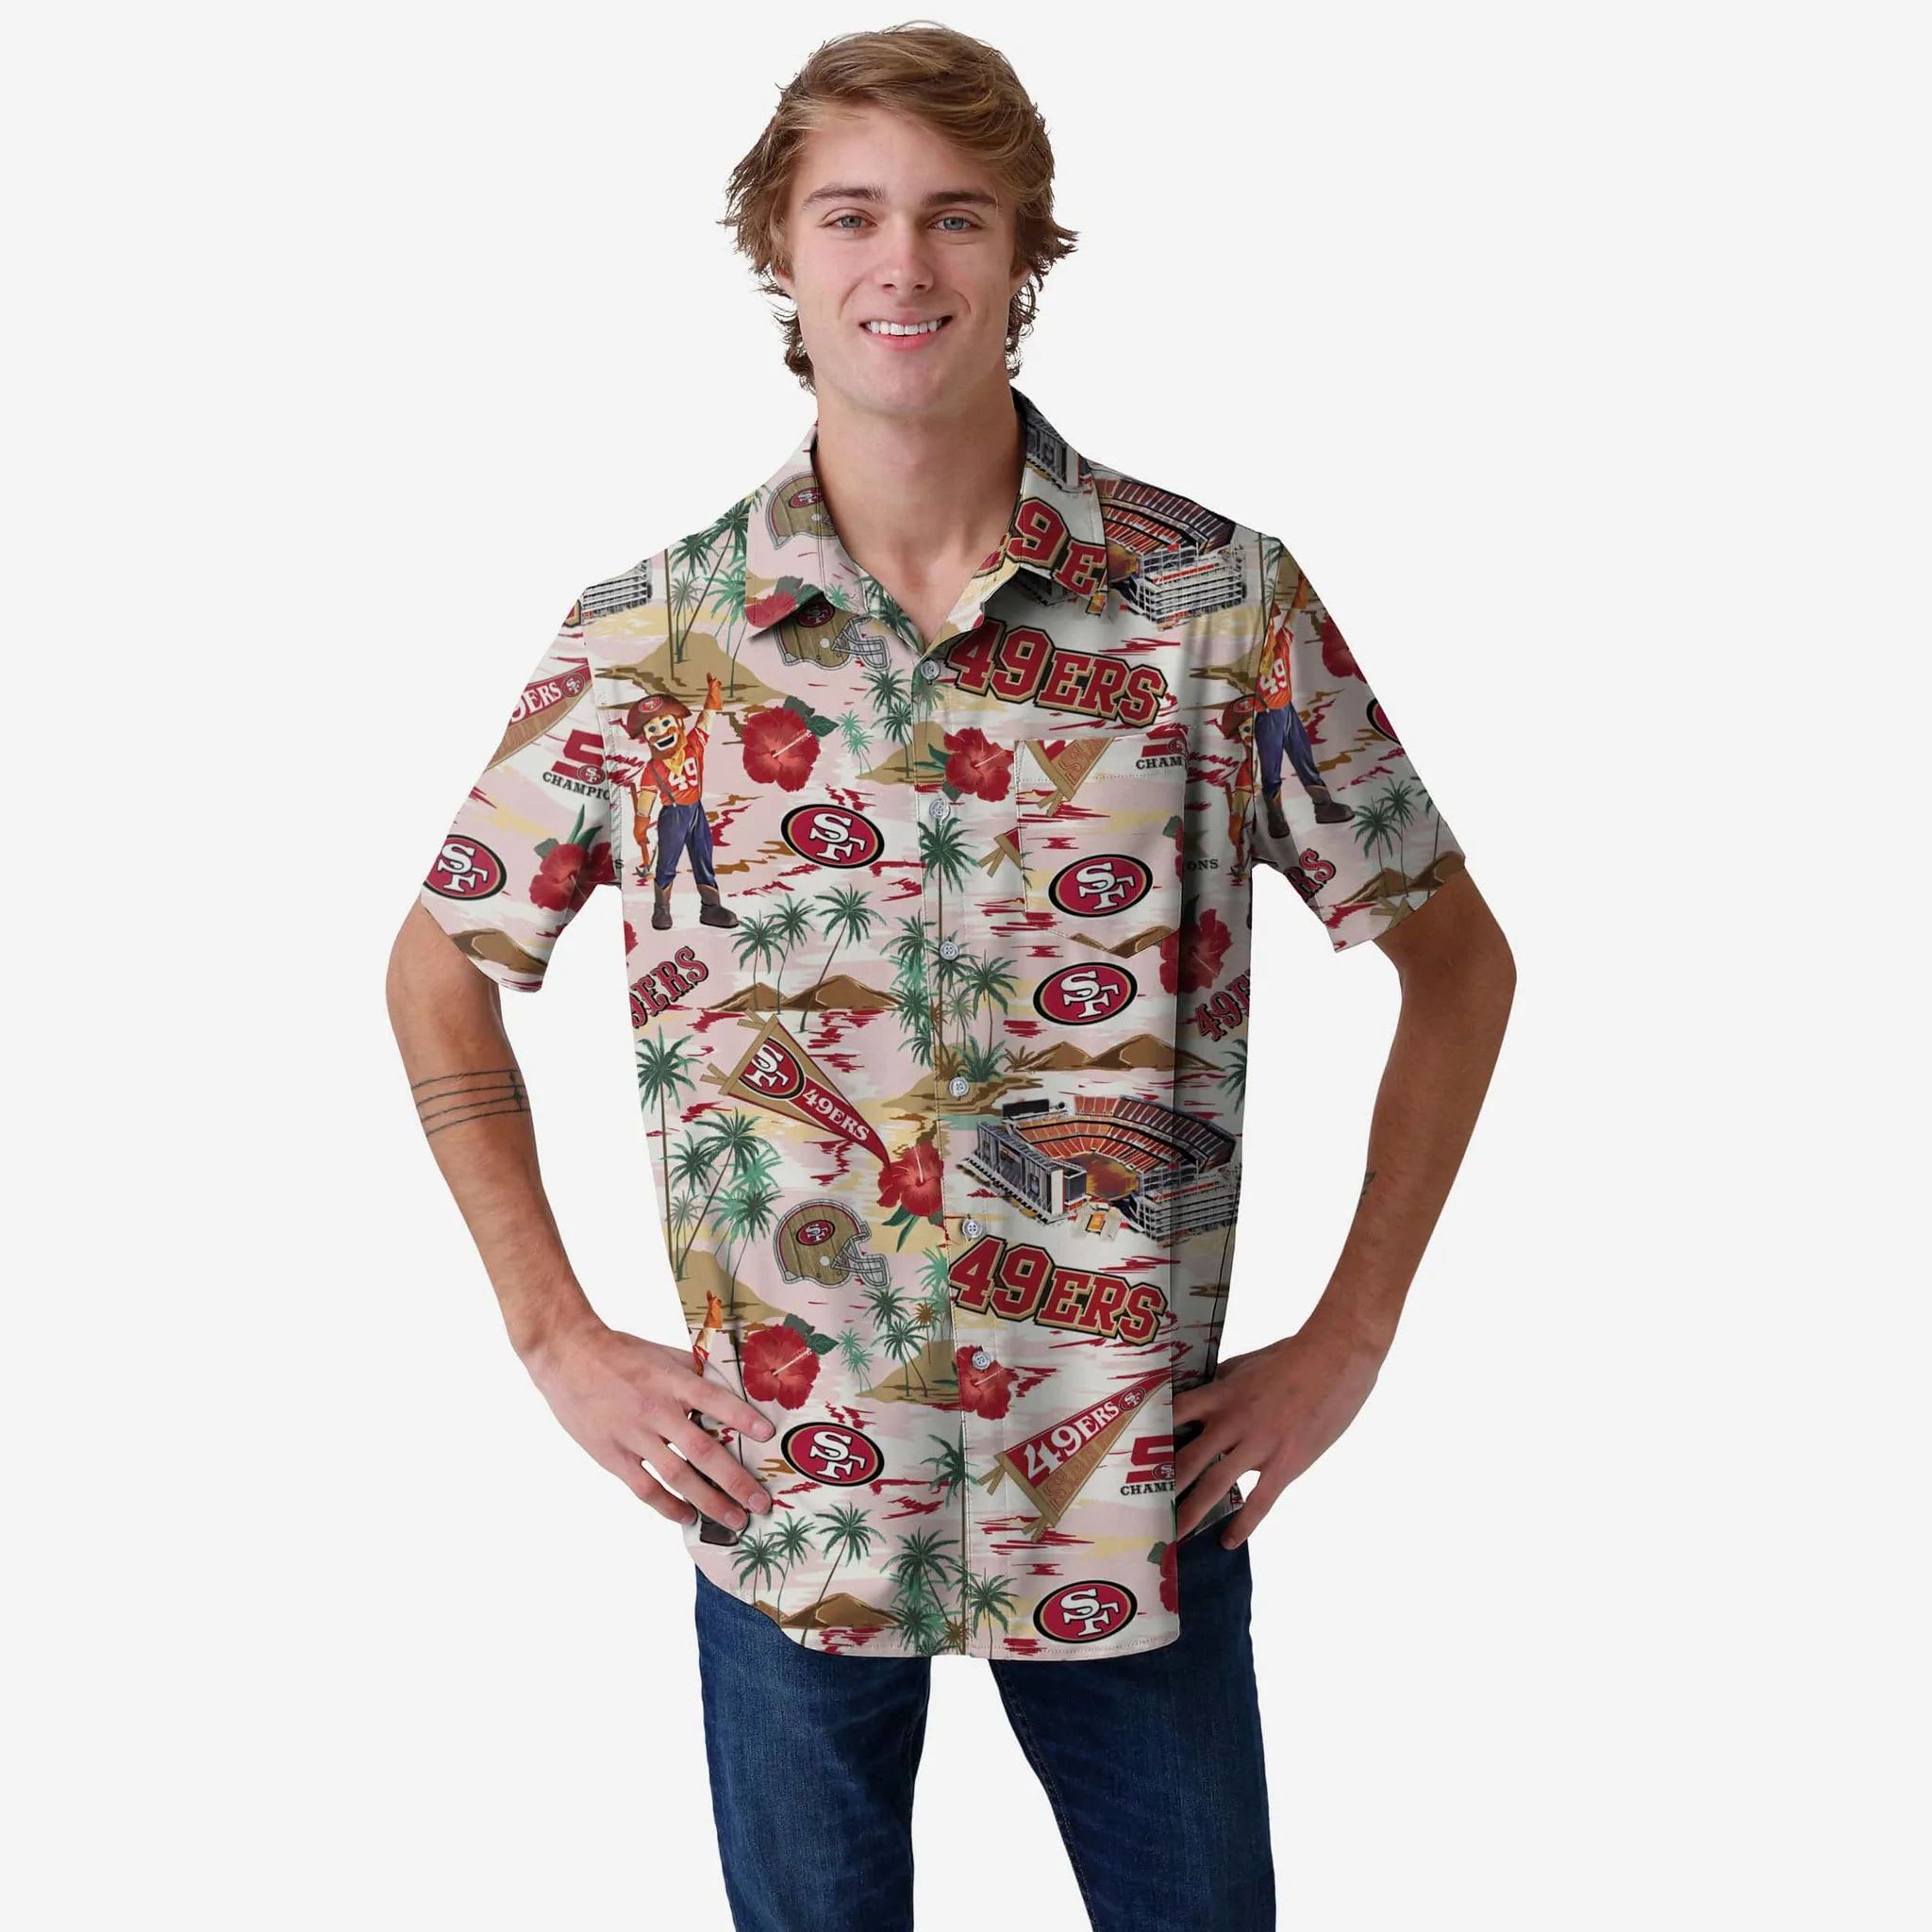 NFL Hawaiian shirts